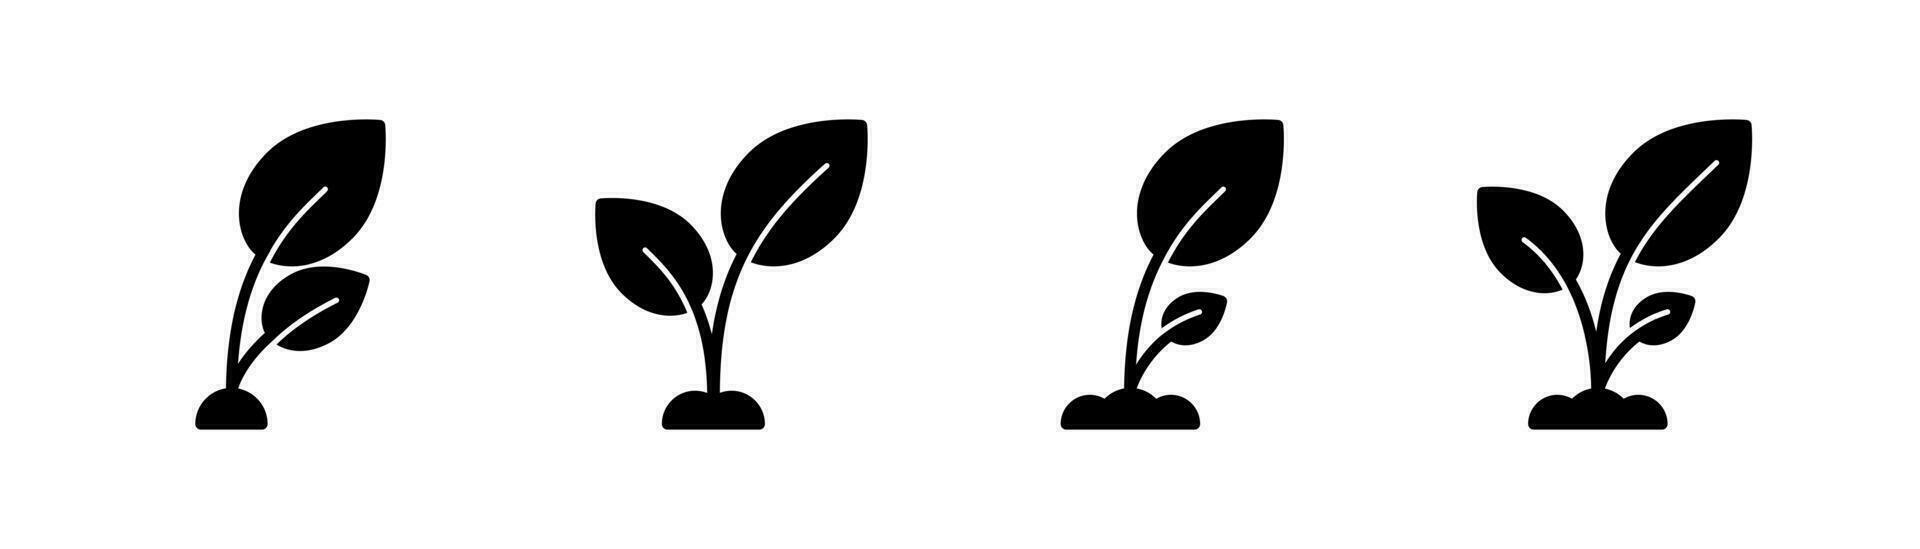 Öko Blatt Glyphe Symbol. Ökologie Illustration. Öko Symbol. Ökologie Pflanze Glyphe Symbol. Öko unterzeichnen. Lager Vektor Illustration.